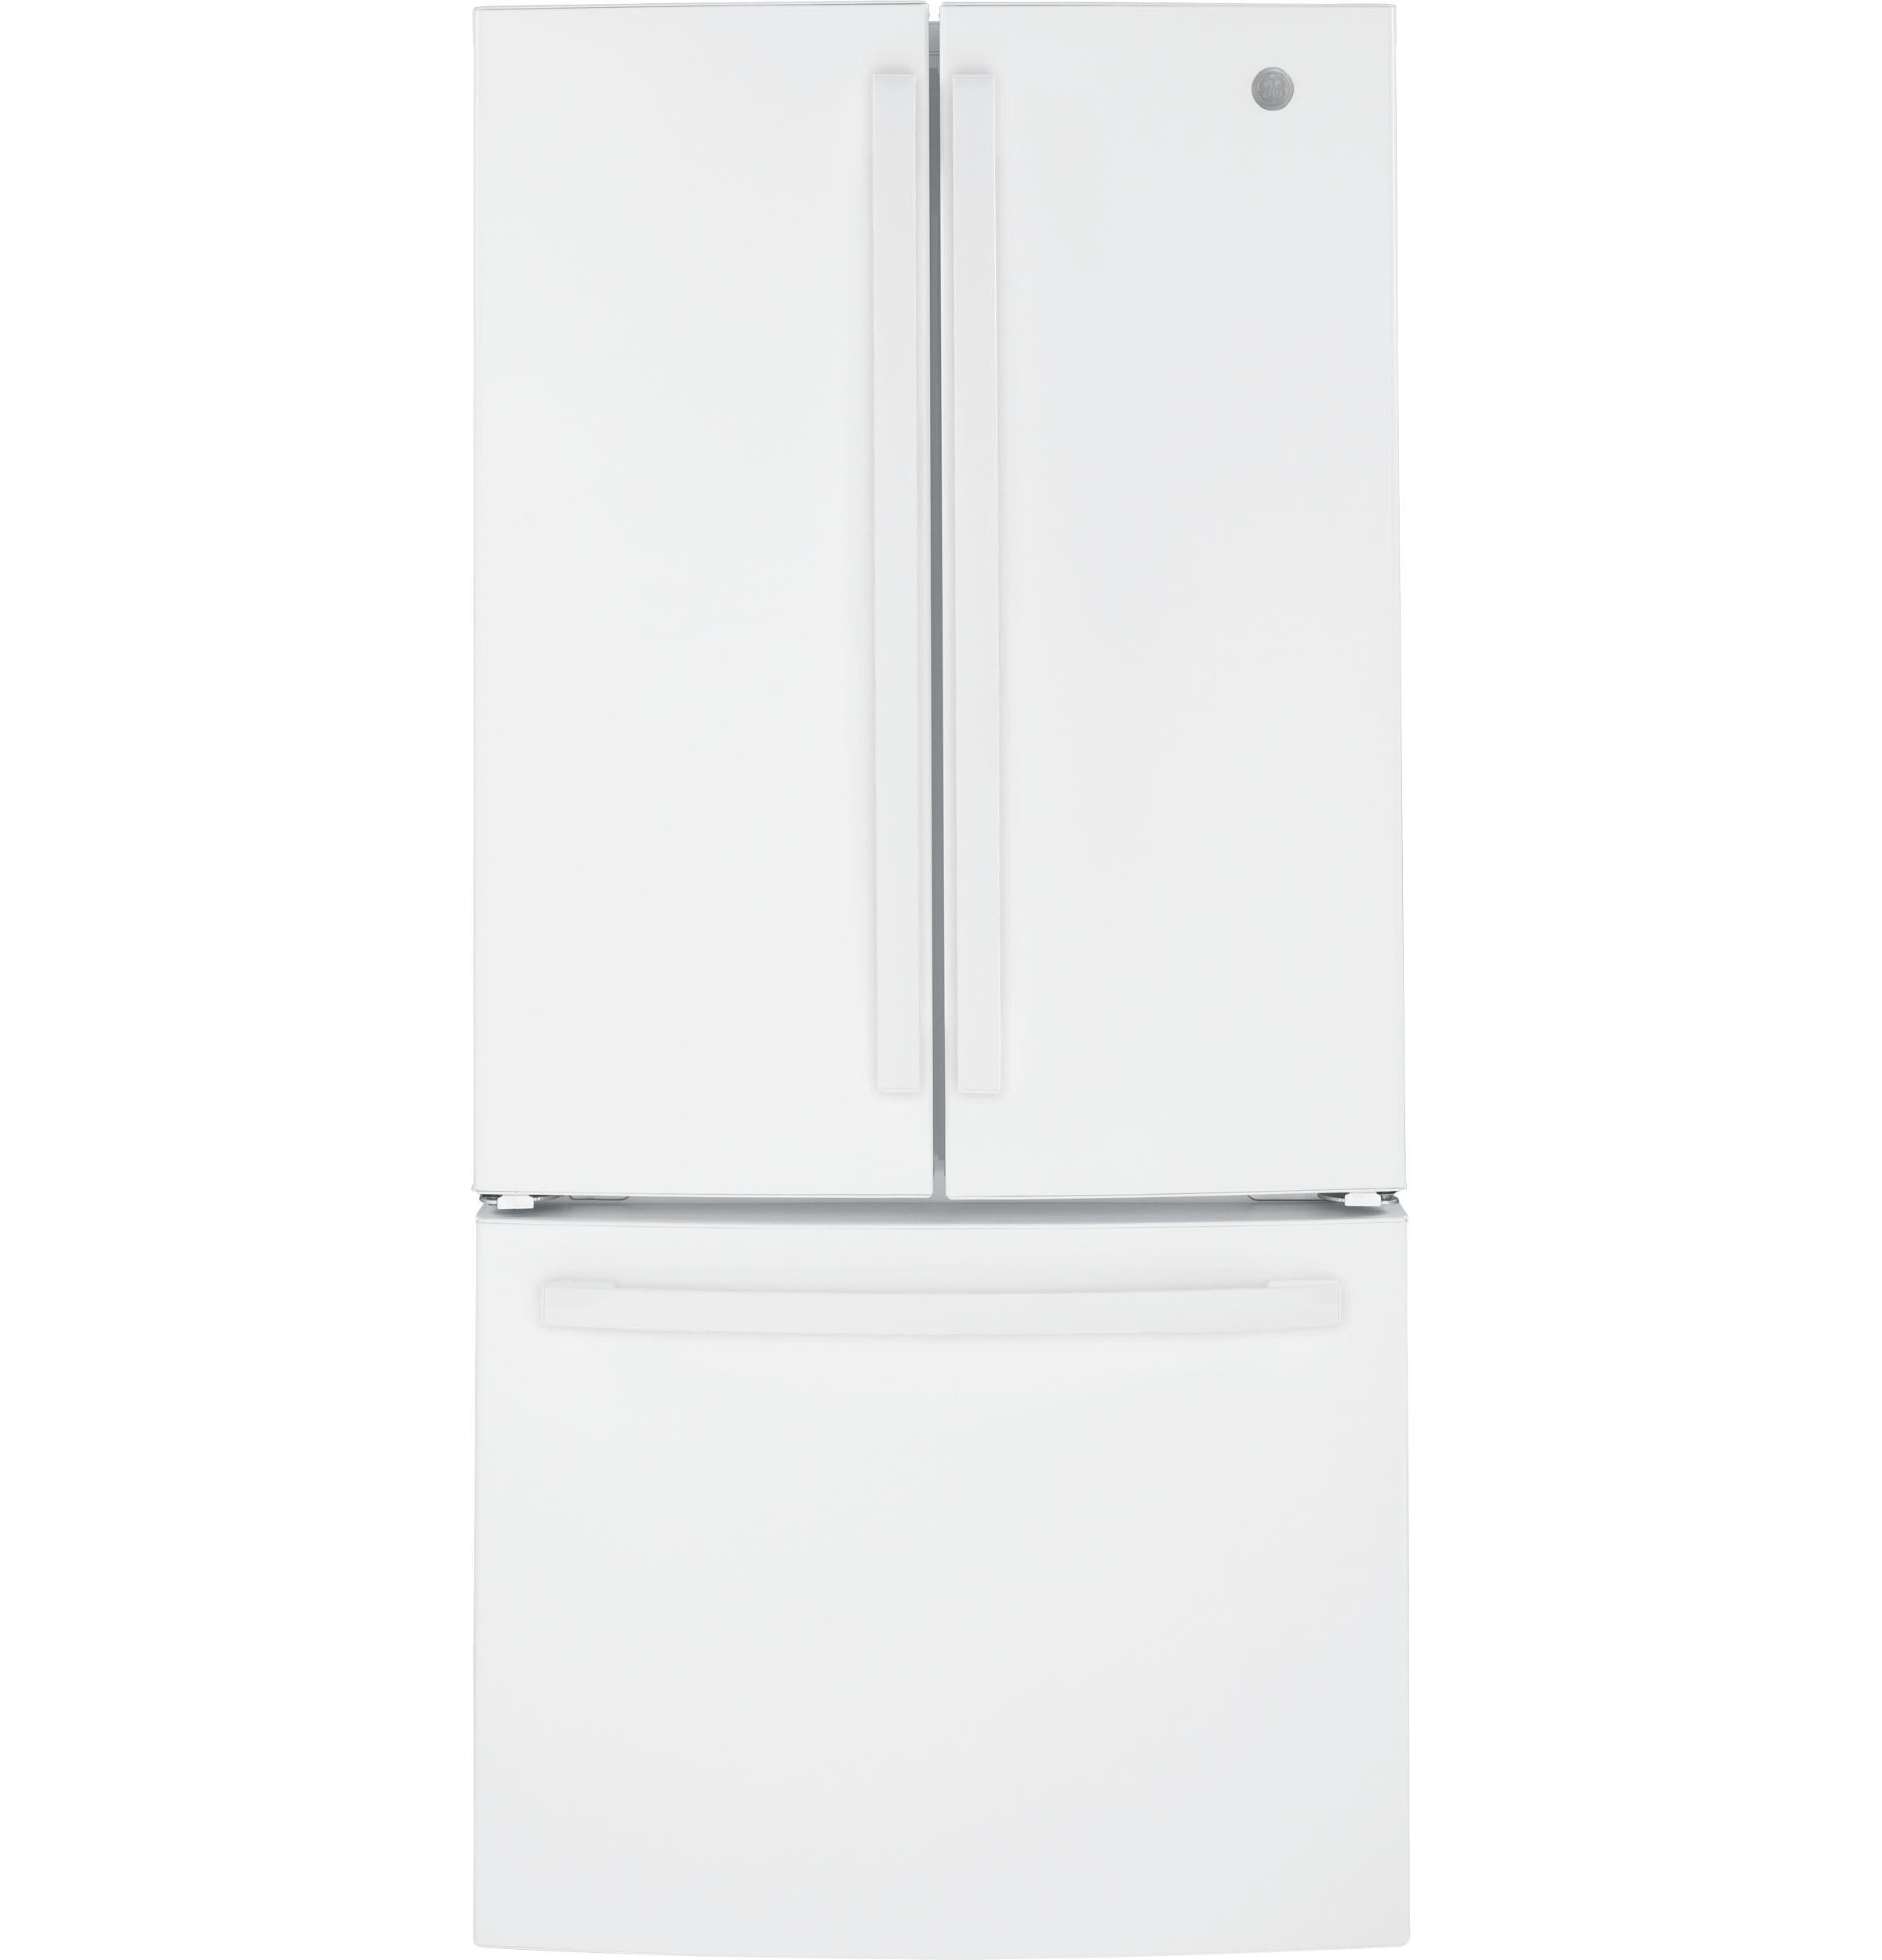 Buy GE ENERGY STAR 25.7 Cu. Ft. French-Door Refrigerator